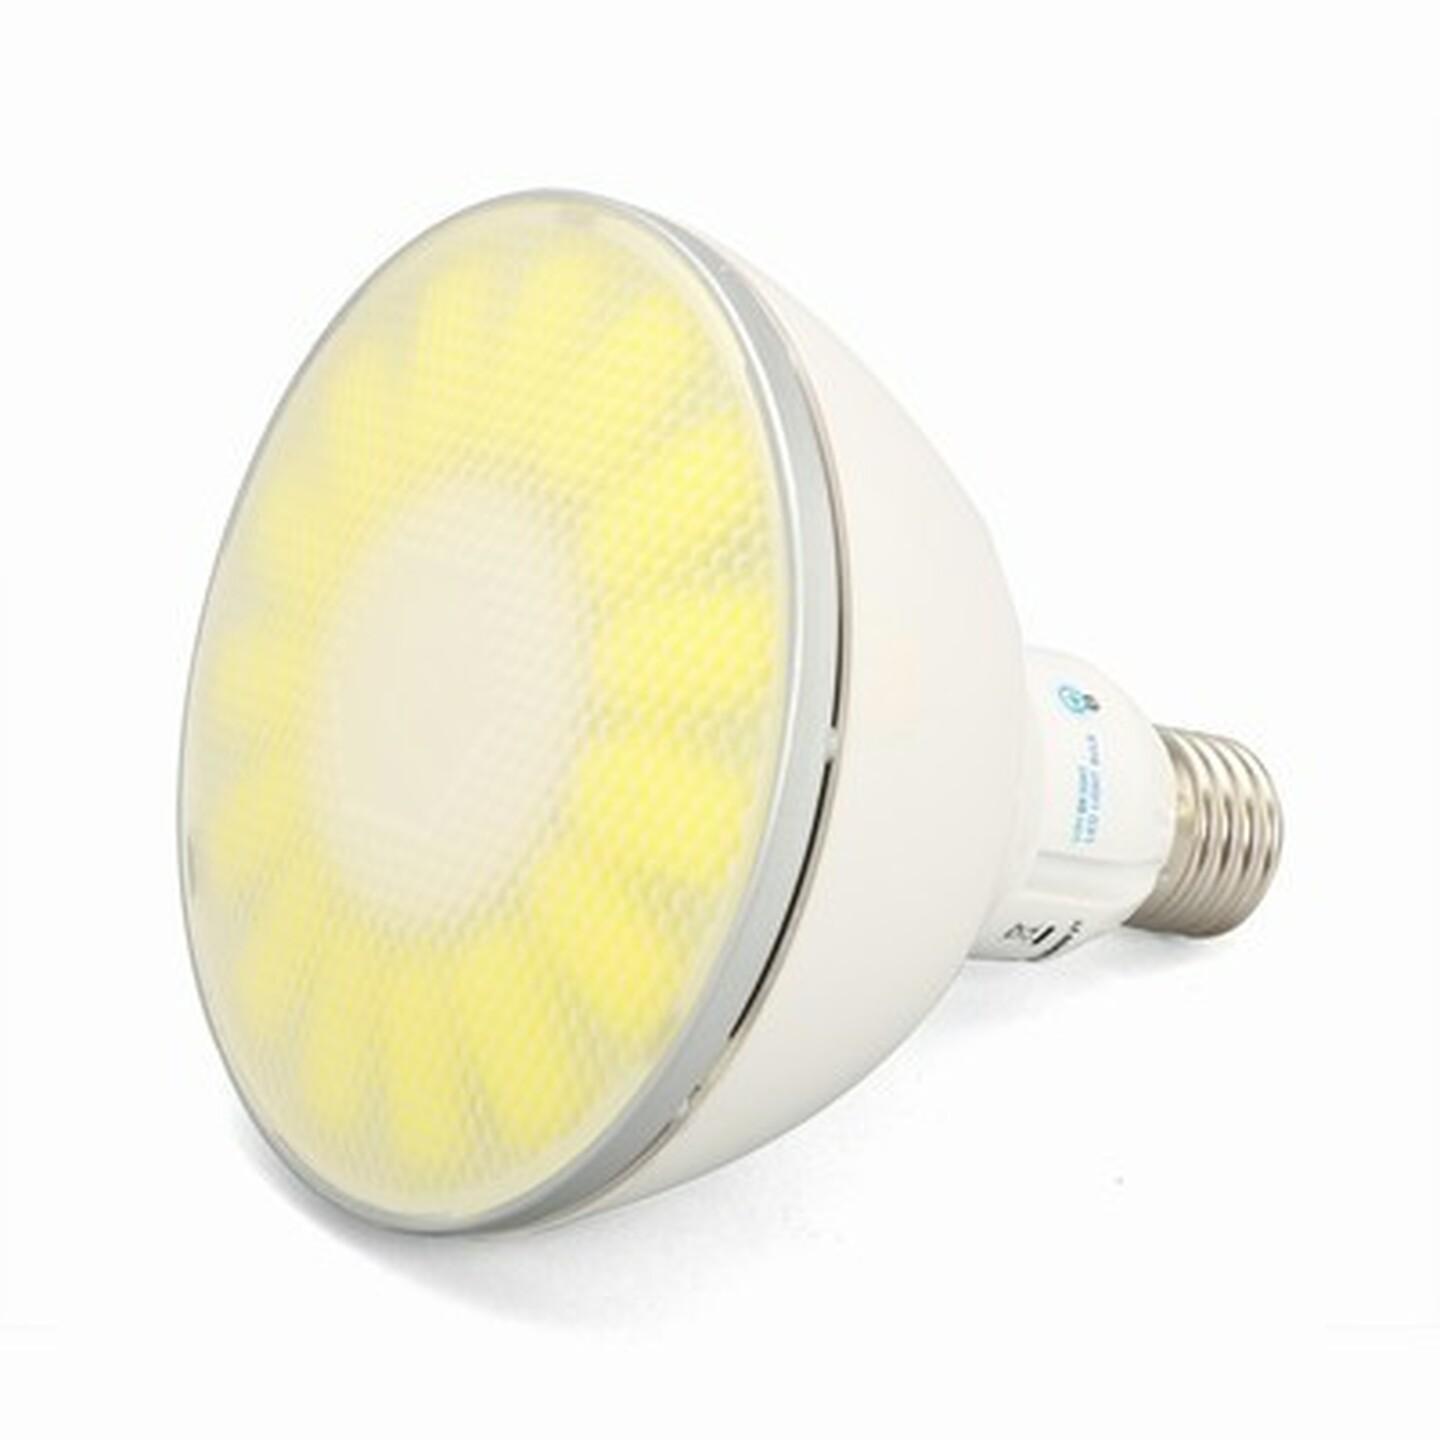 Viribright 18W PAR38 LED Spotlight - Cool White